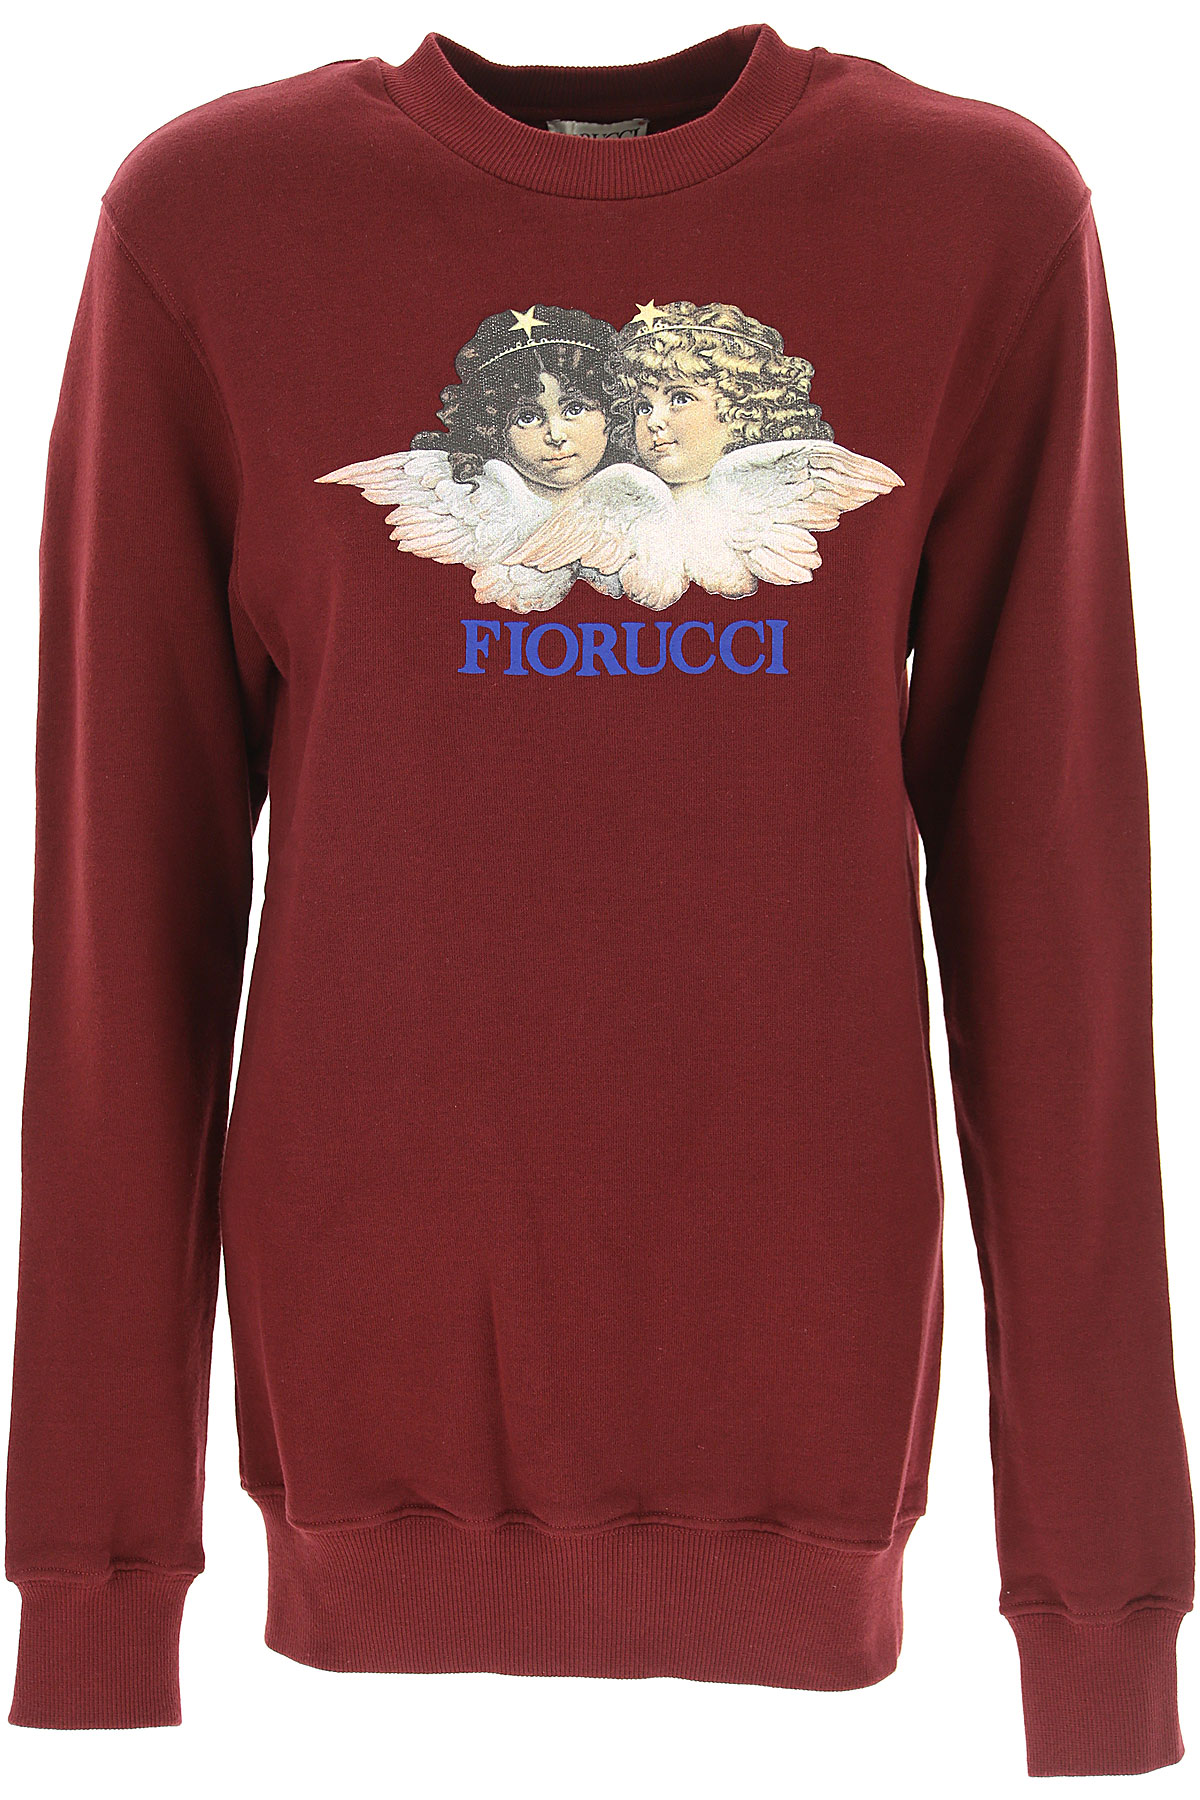 Fiorucci Sweatshirt für Damen, Kapuzenpulli, Hoodie, Sweats Günstig im Sale, Burgunder, Baumwolle, 2017, 38 40 44 M